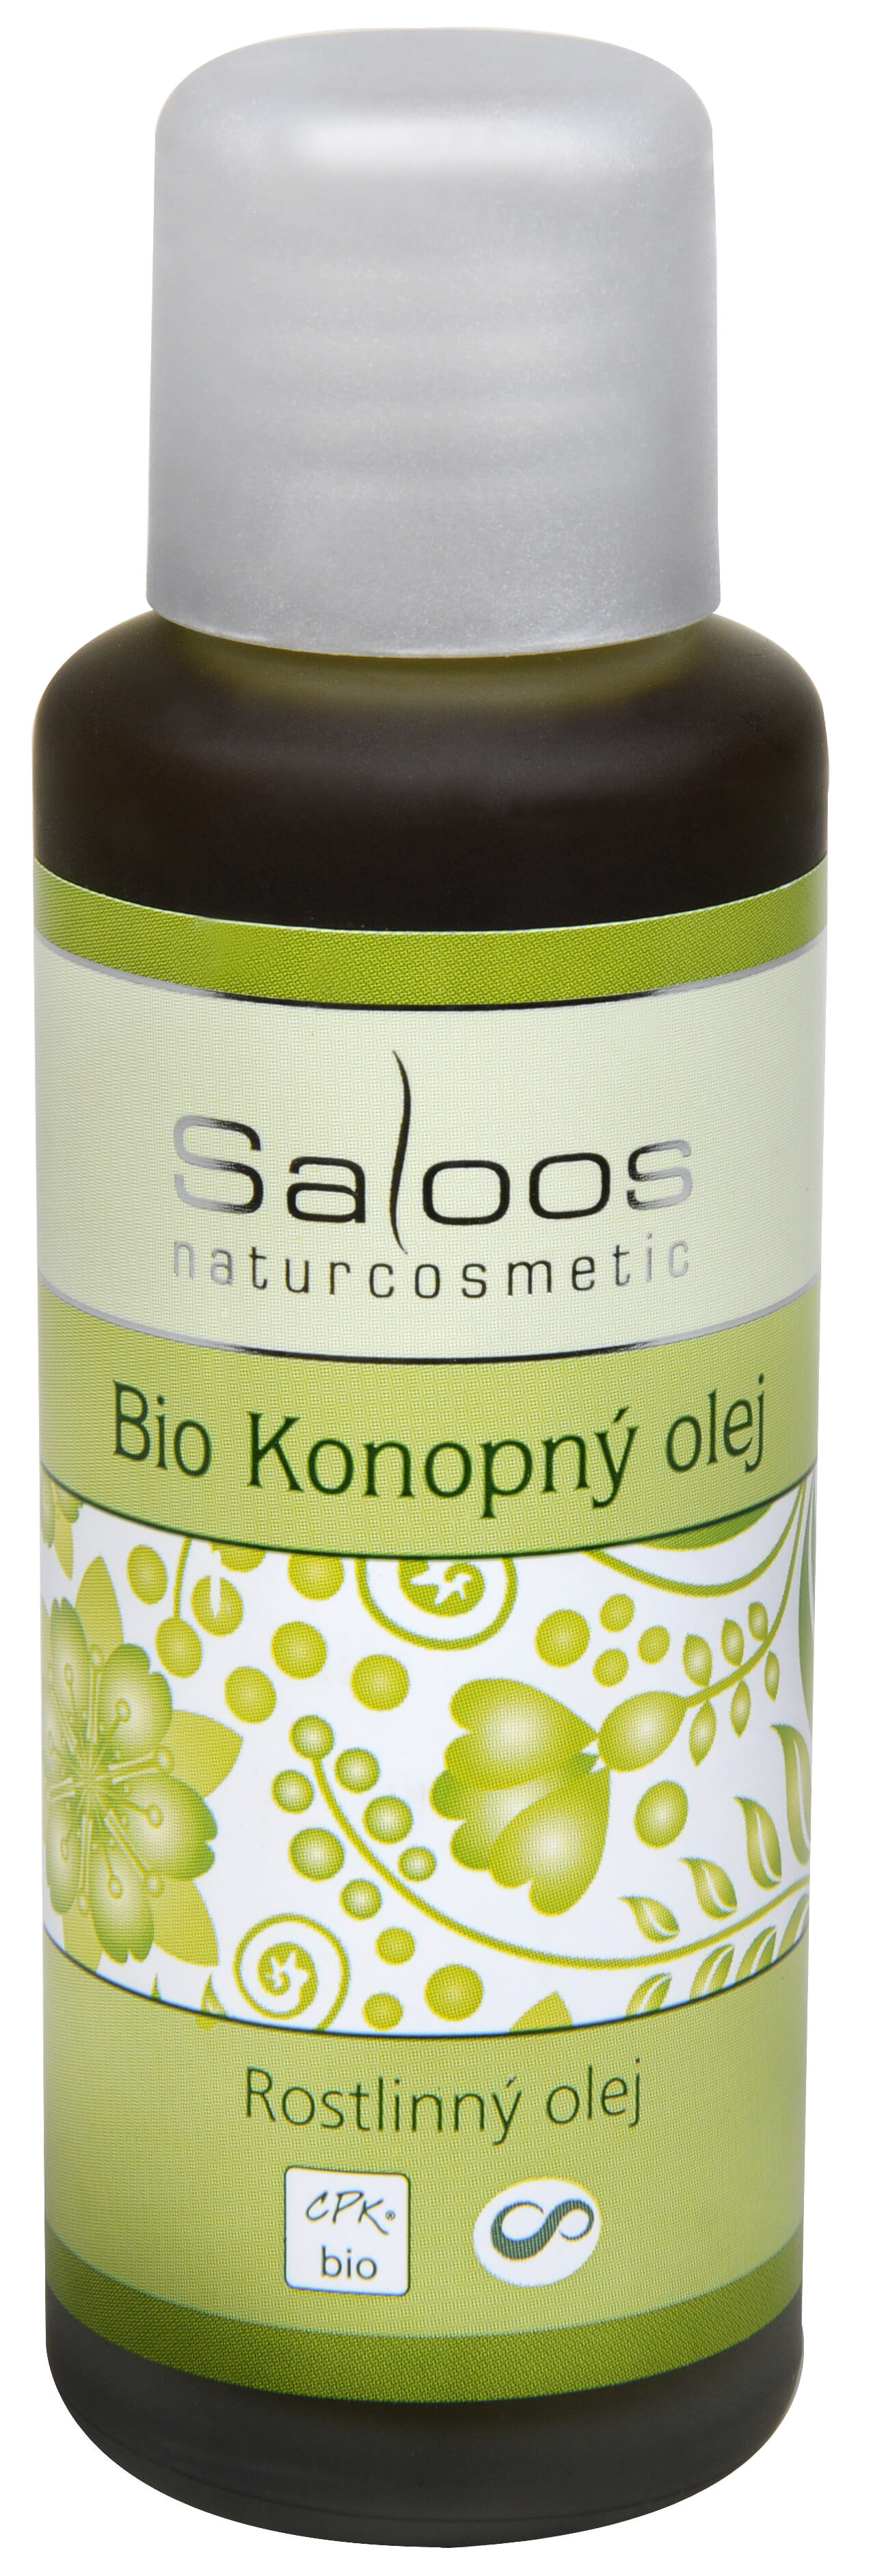 Saloos Bio Konopný olej lisovaný za studena 50 ml